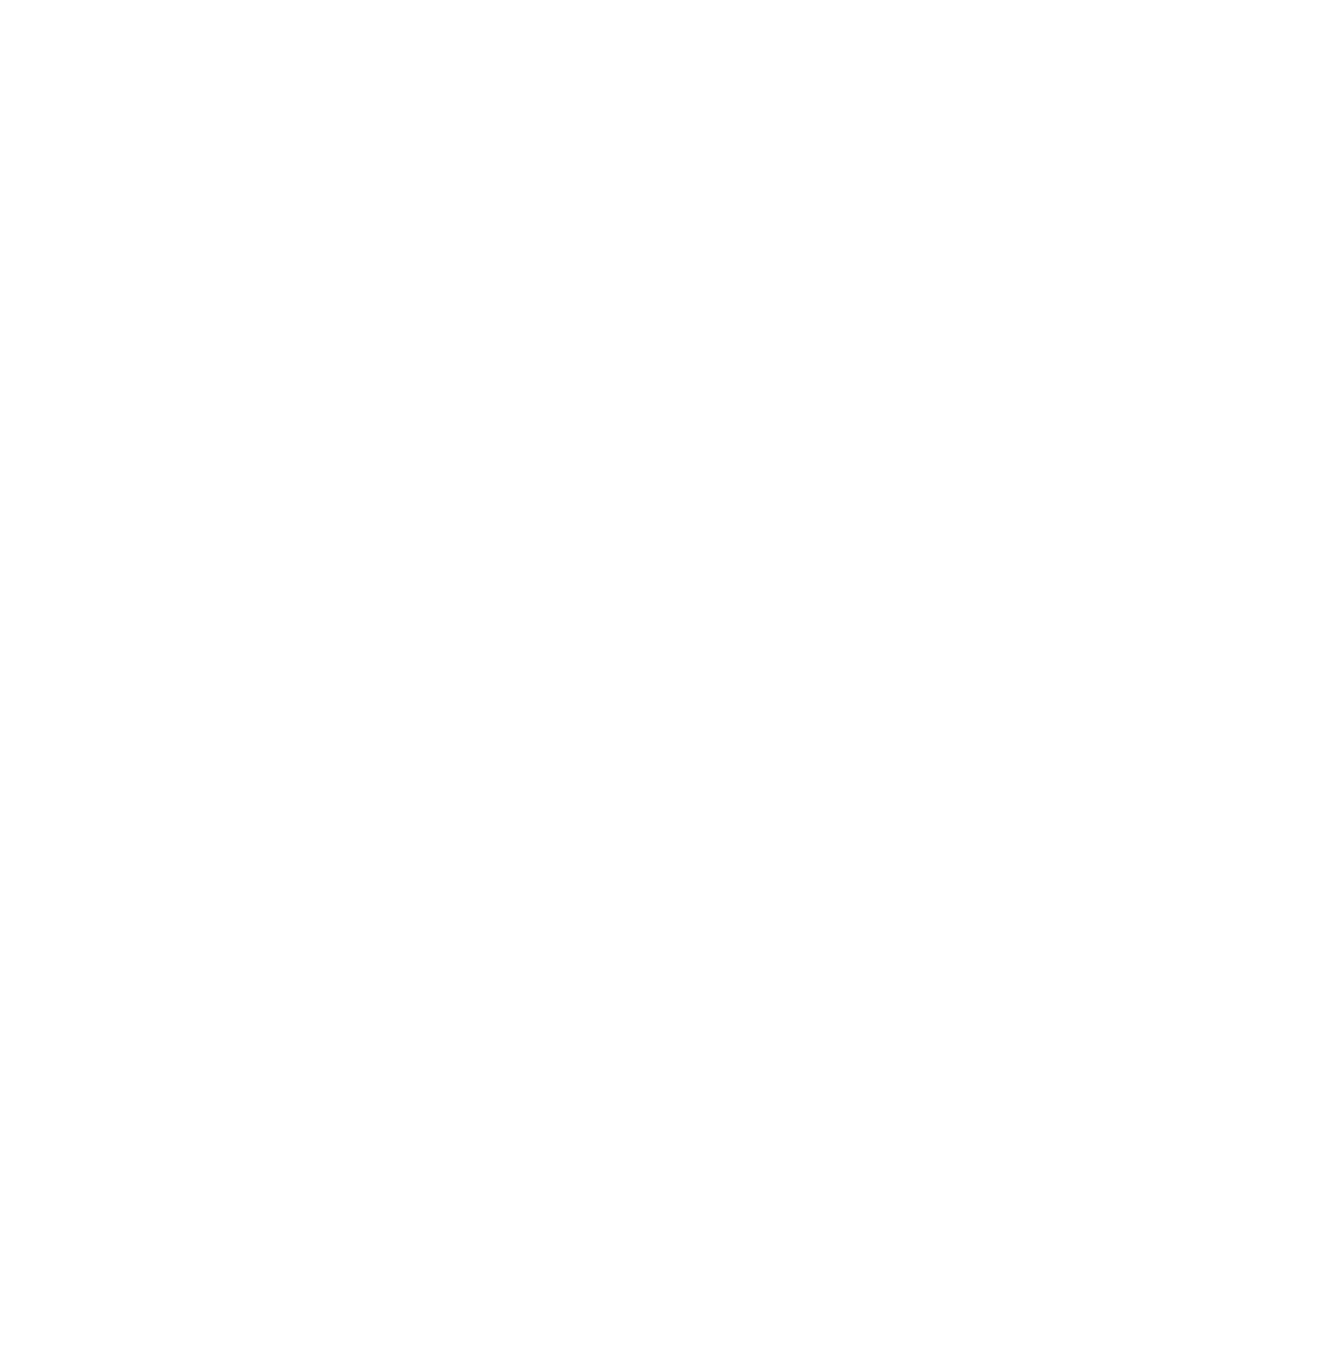 JECOMM logo